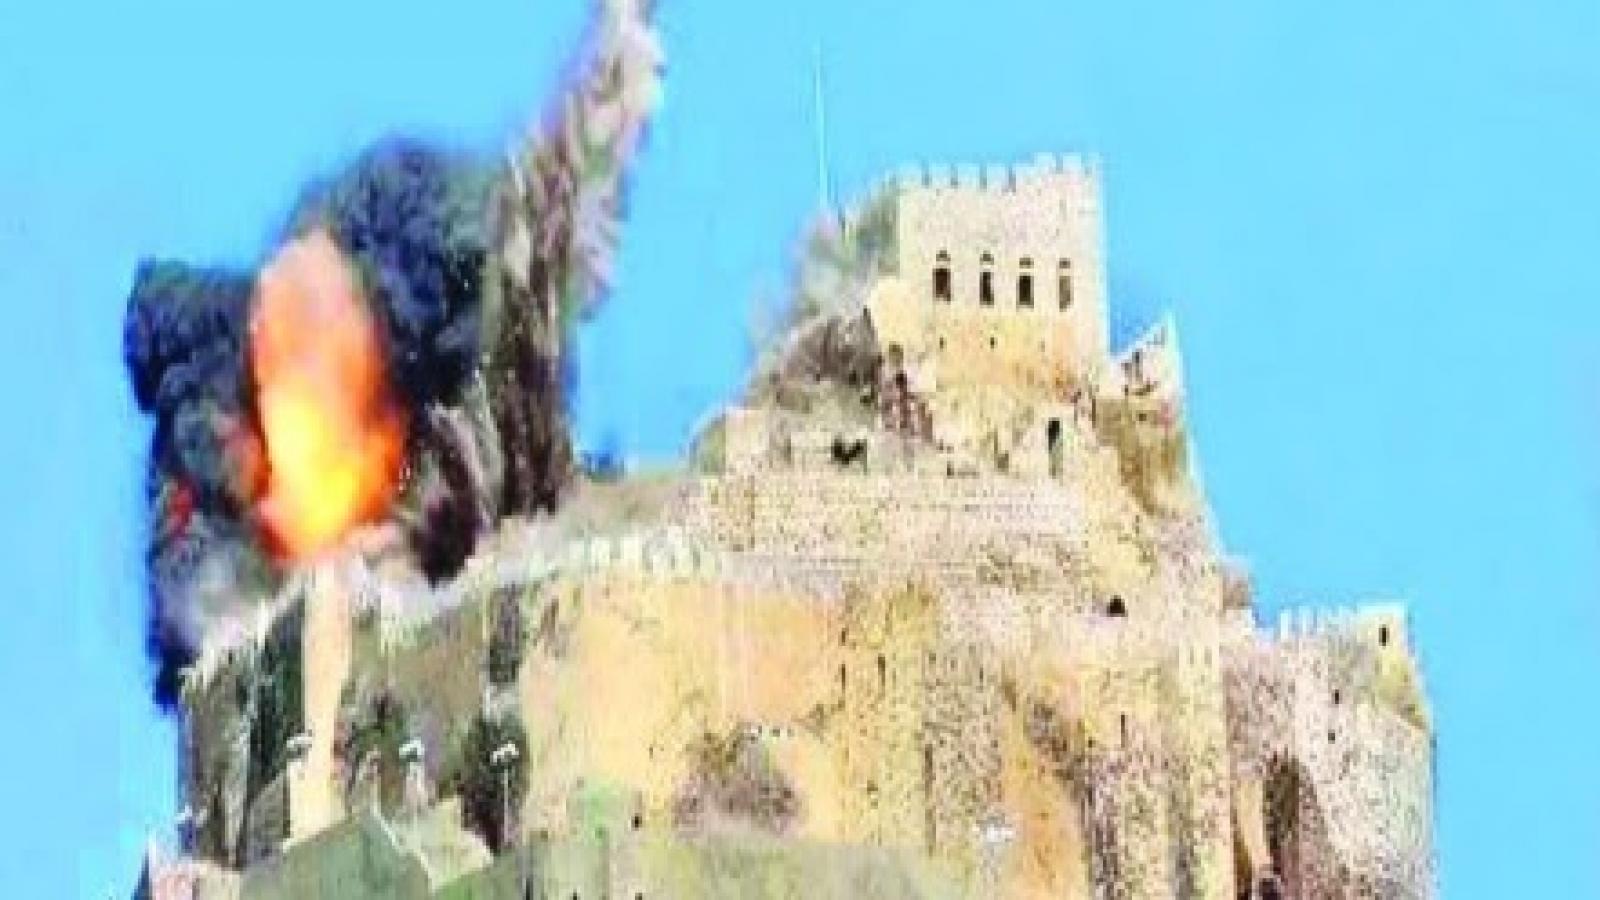 Al-Qahirah Castle under artillery fires, Mandab Press, 21 May 2015